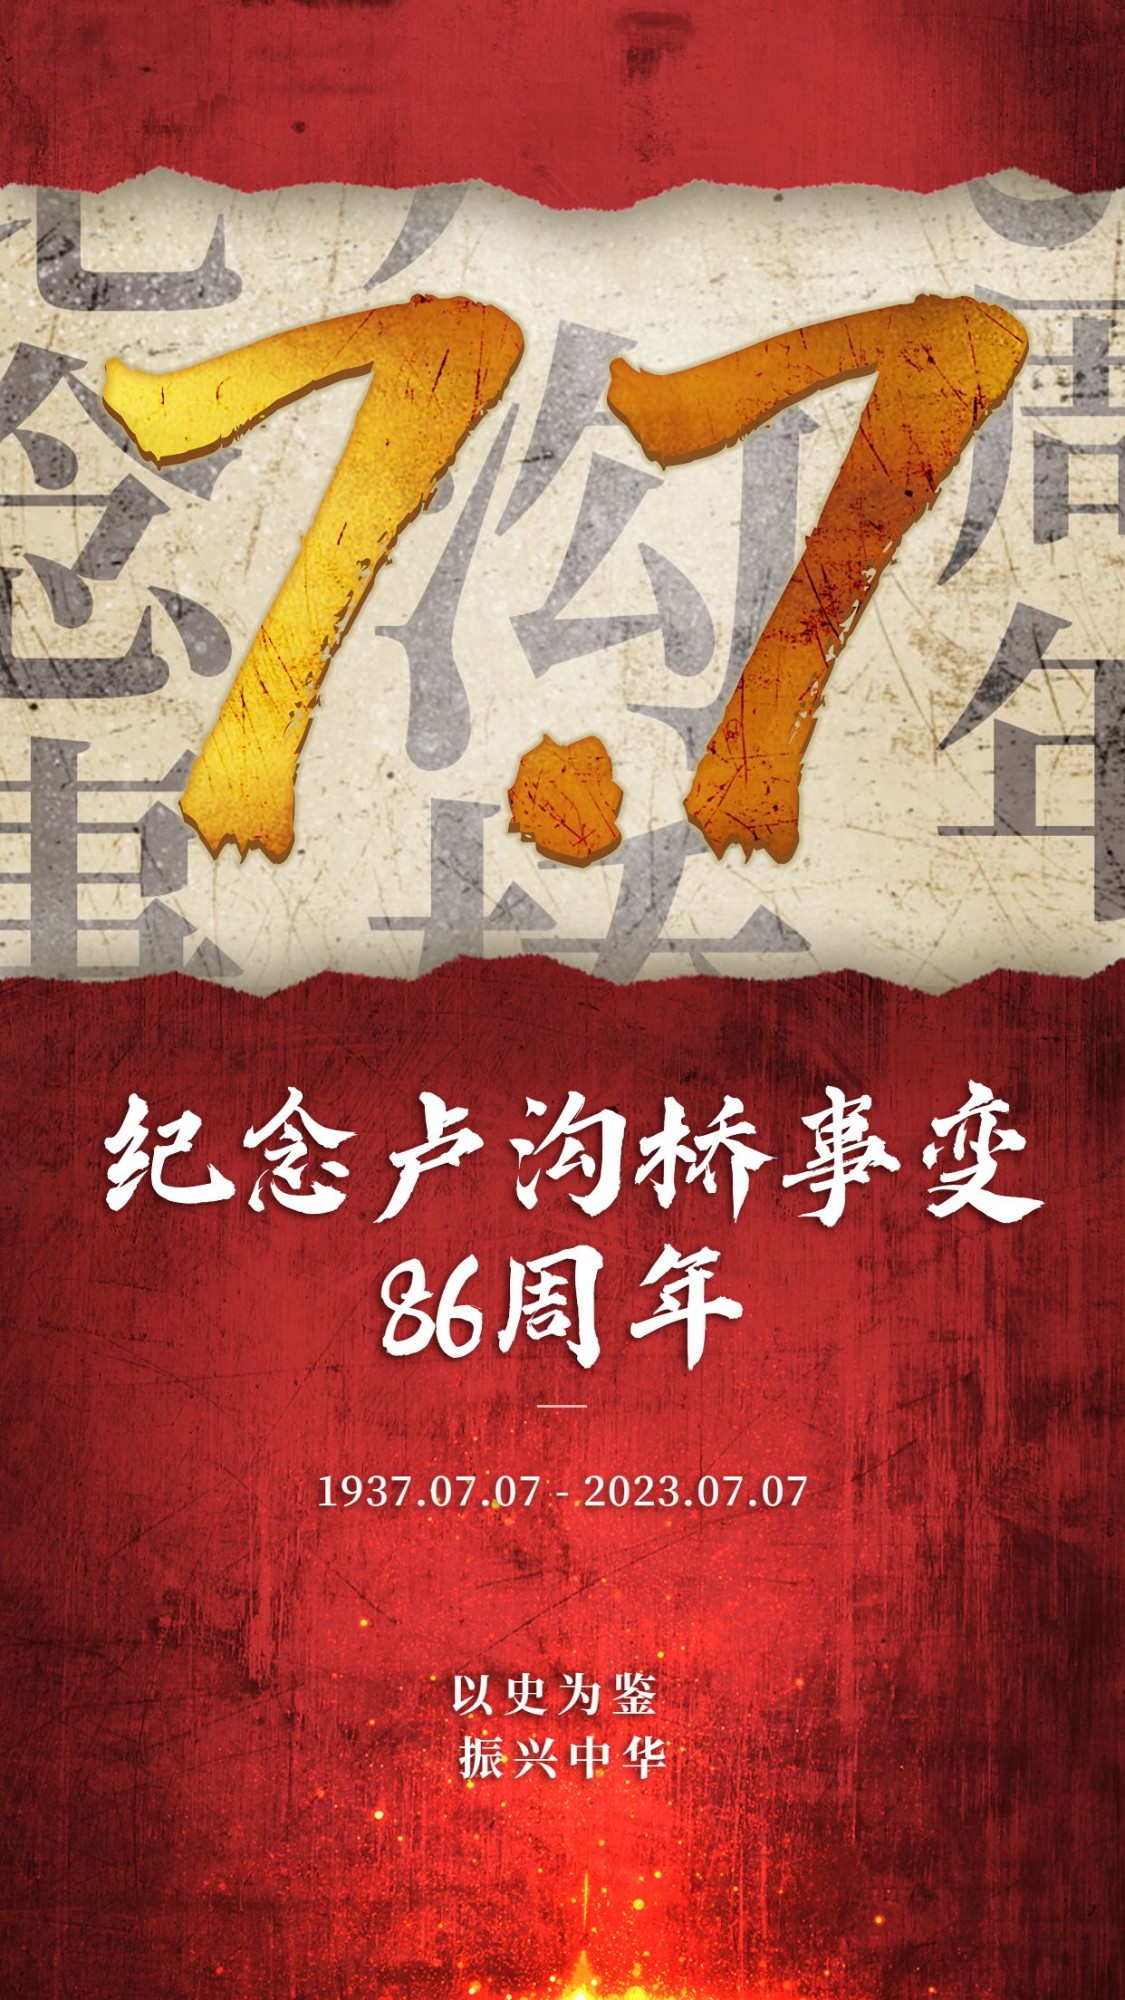 七七事变周年纪念排版手机海报预览效果